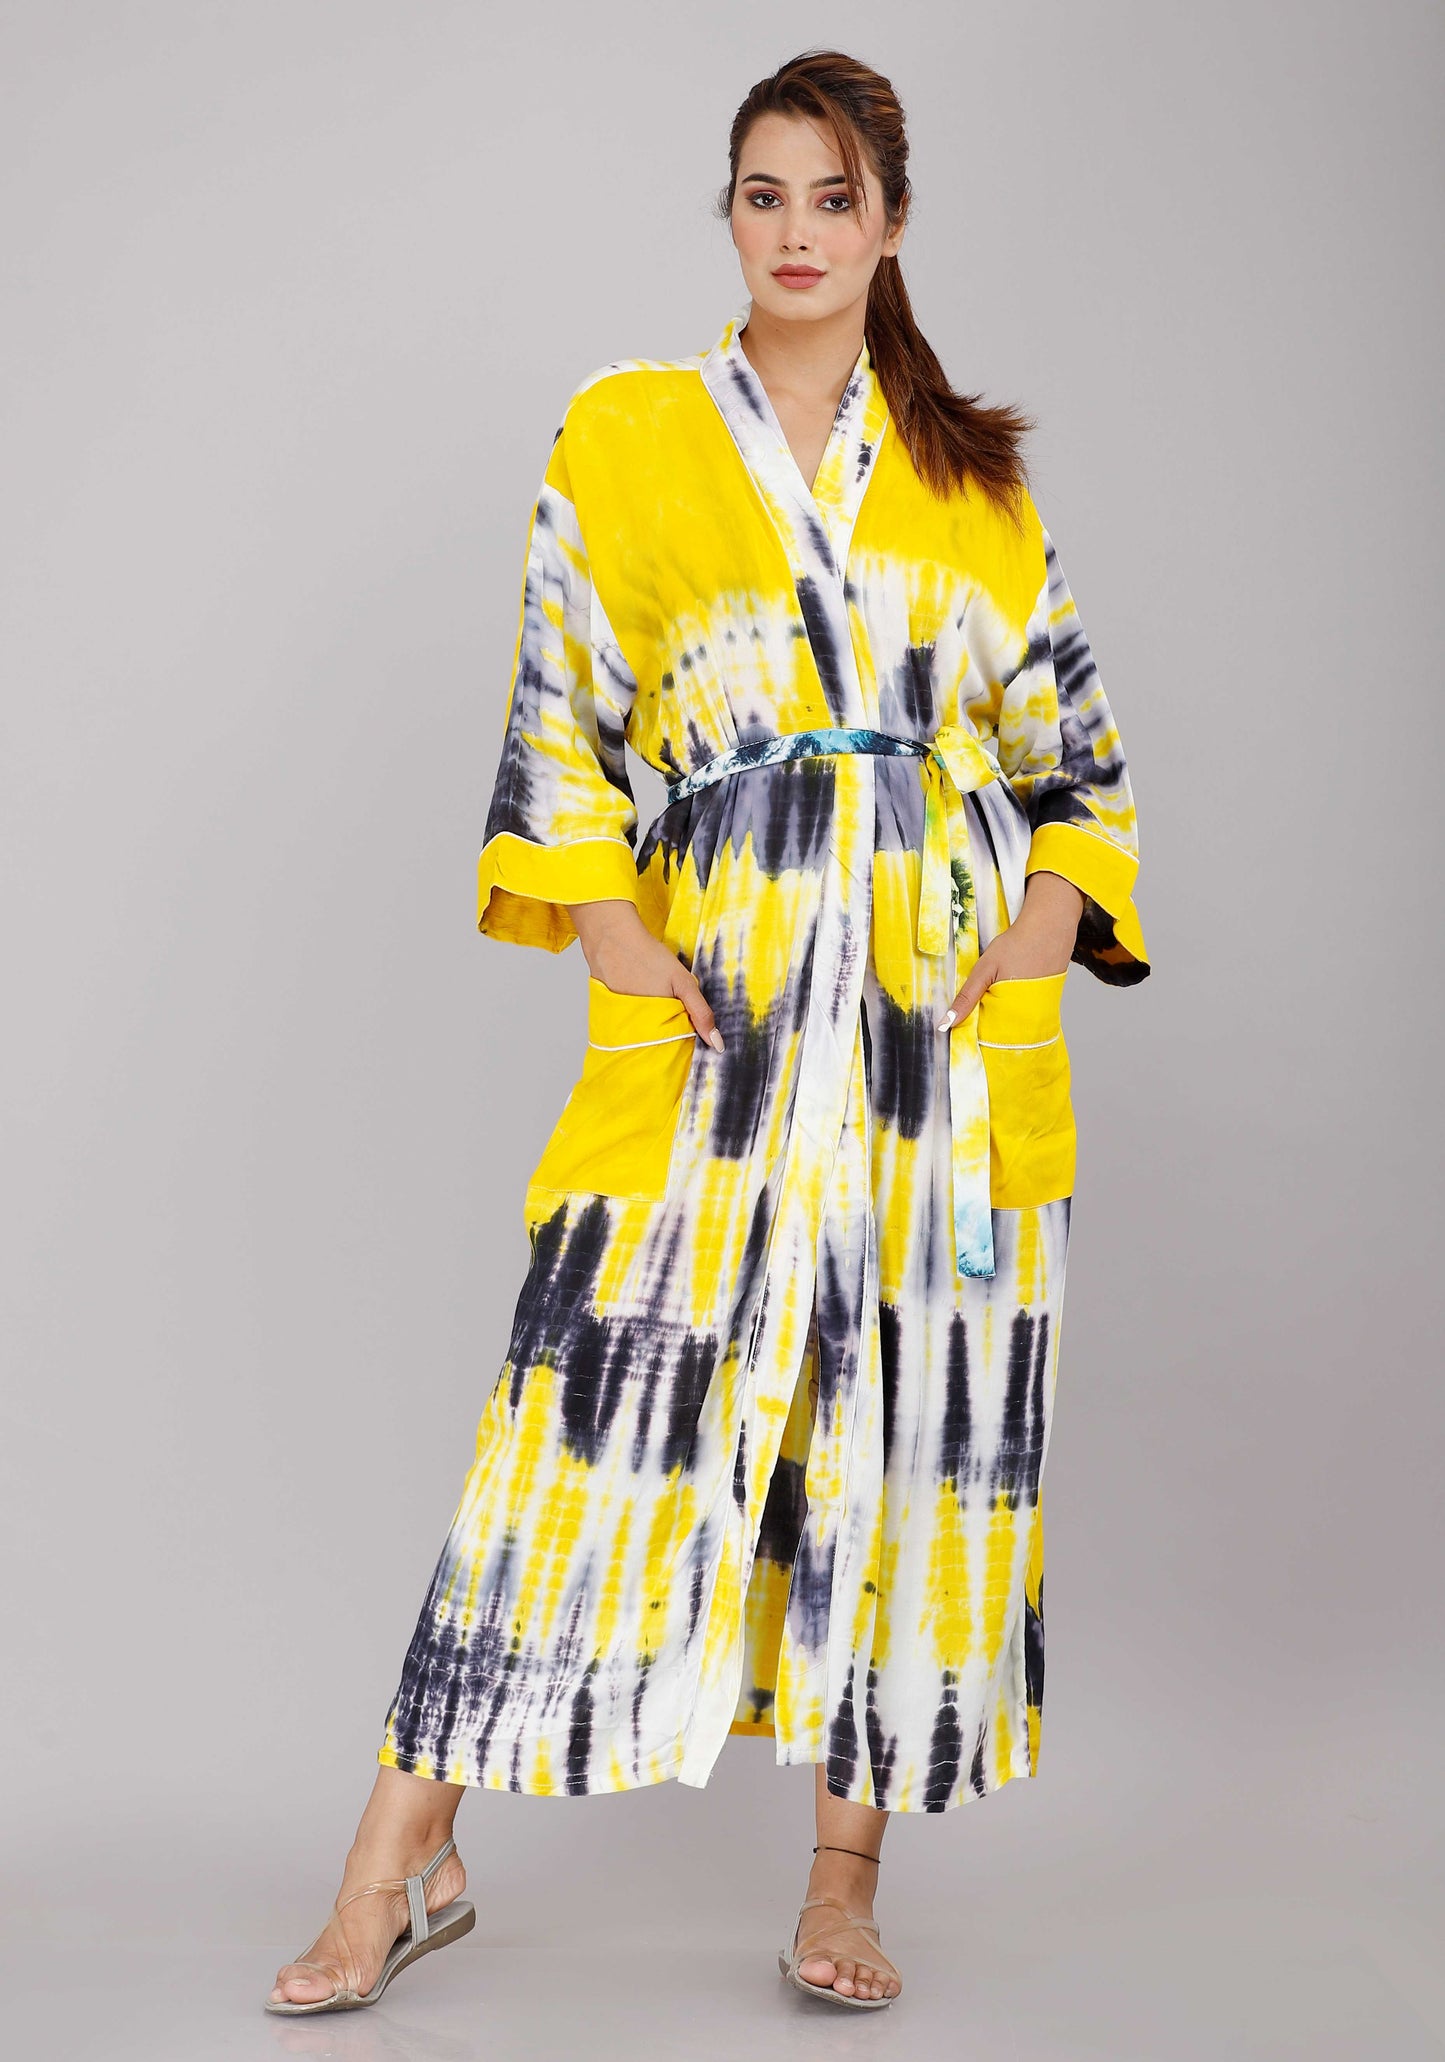 
                  
                    Tie Dye Pattern Kimono Robe Long Bathrobe For Women (Yellow)
                  
                